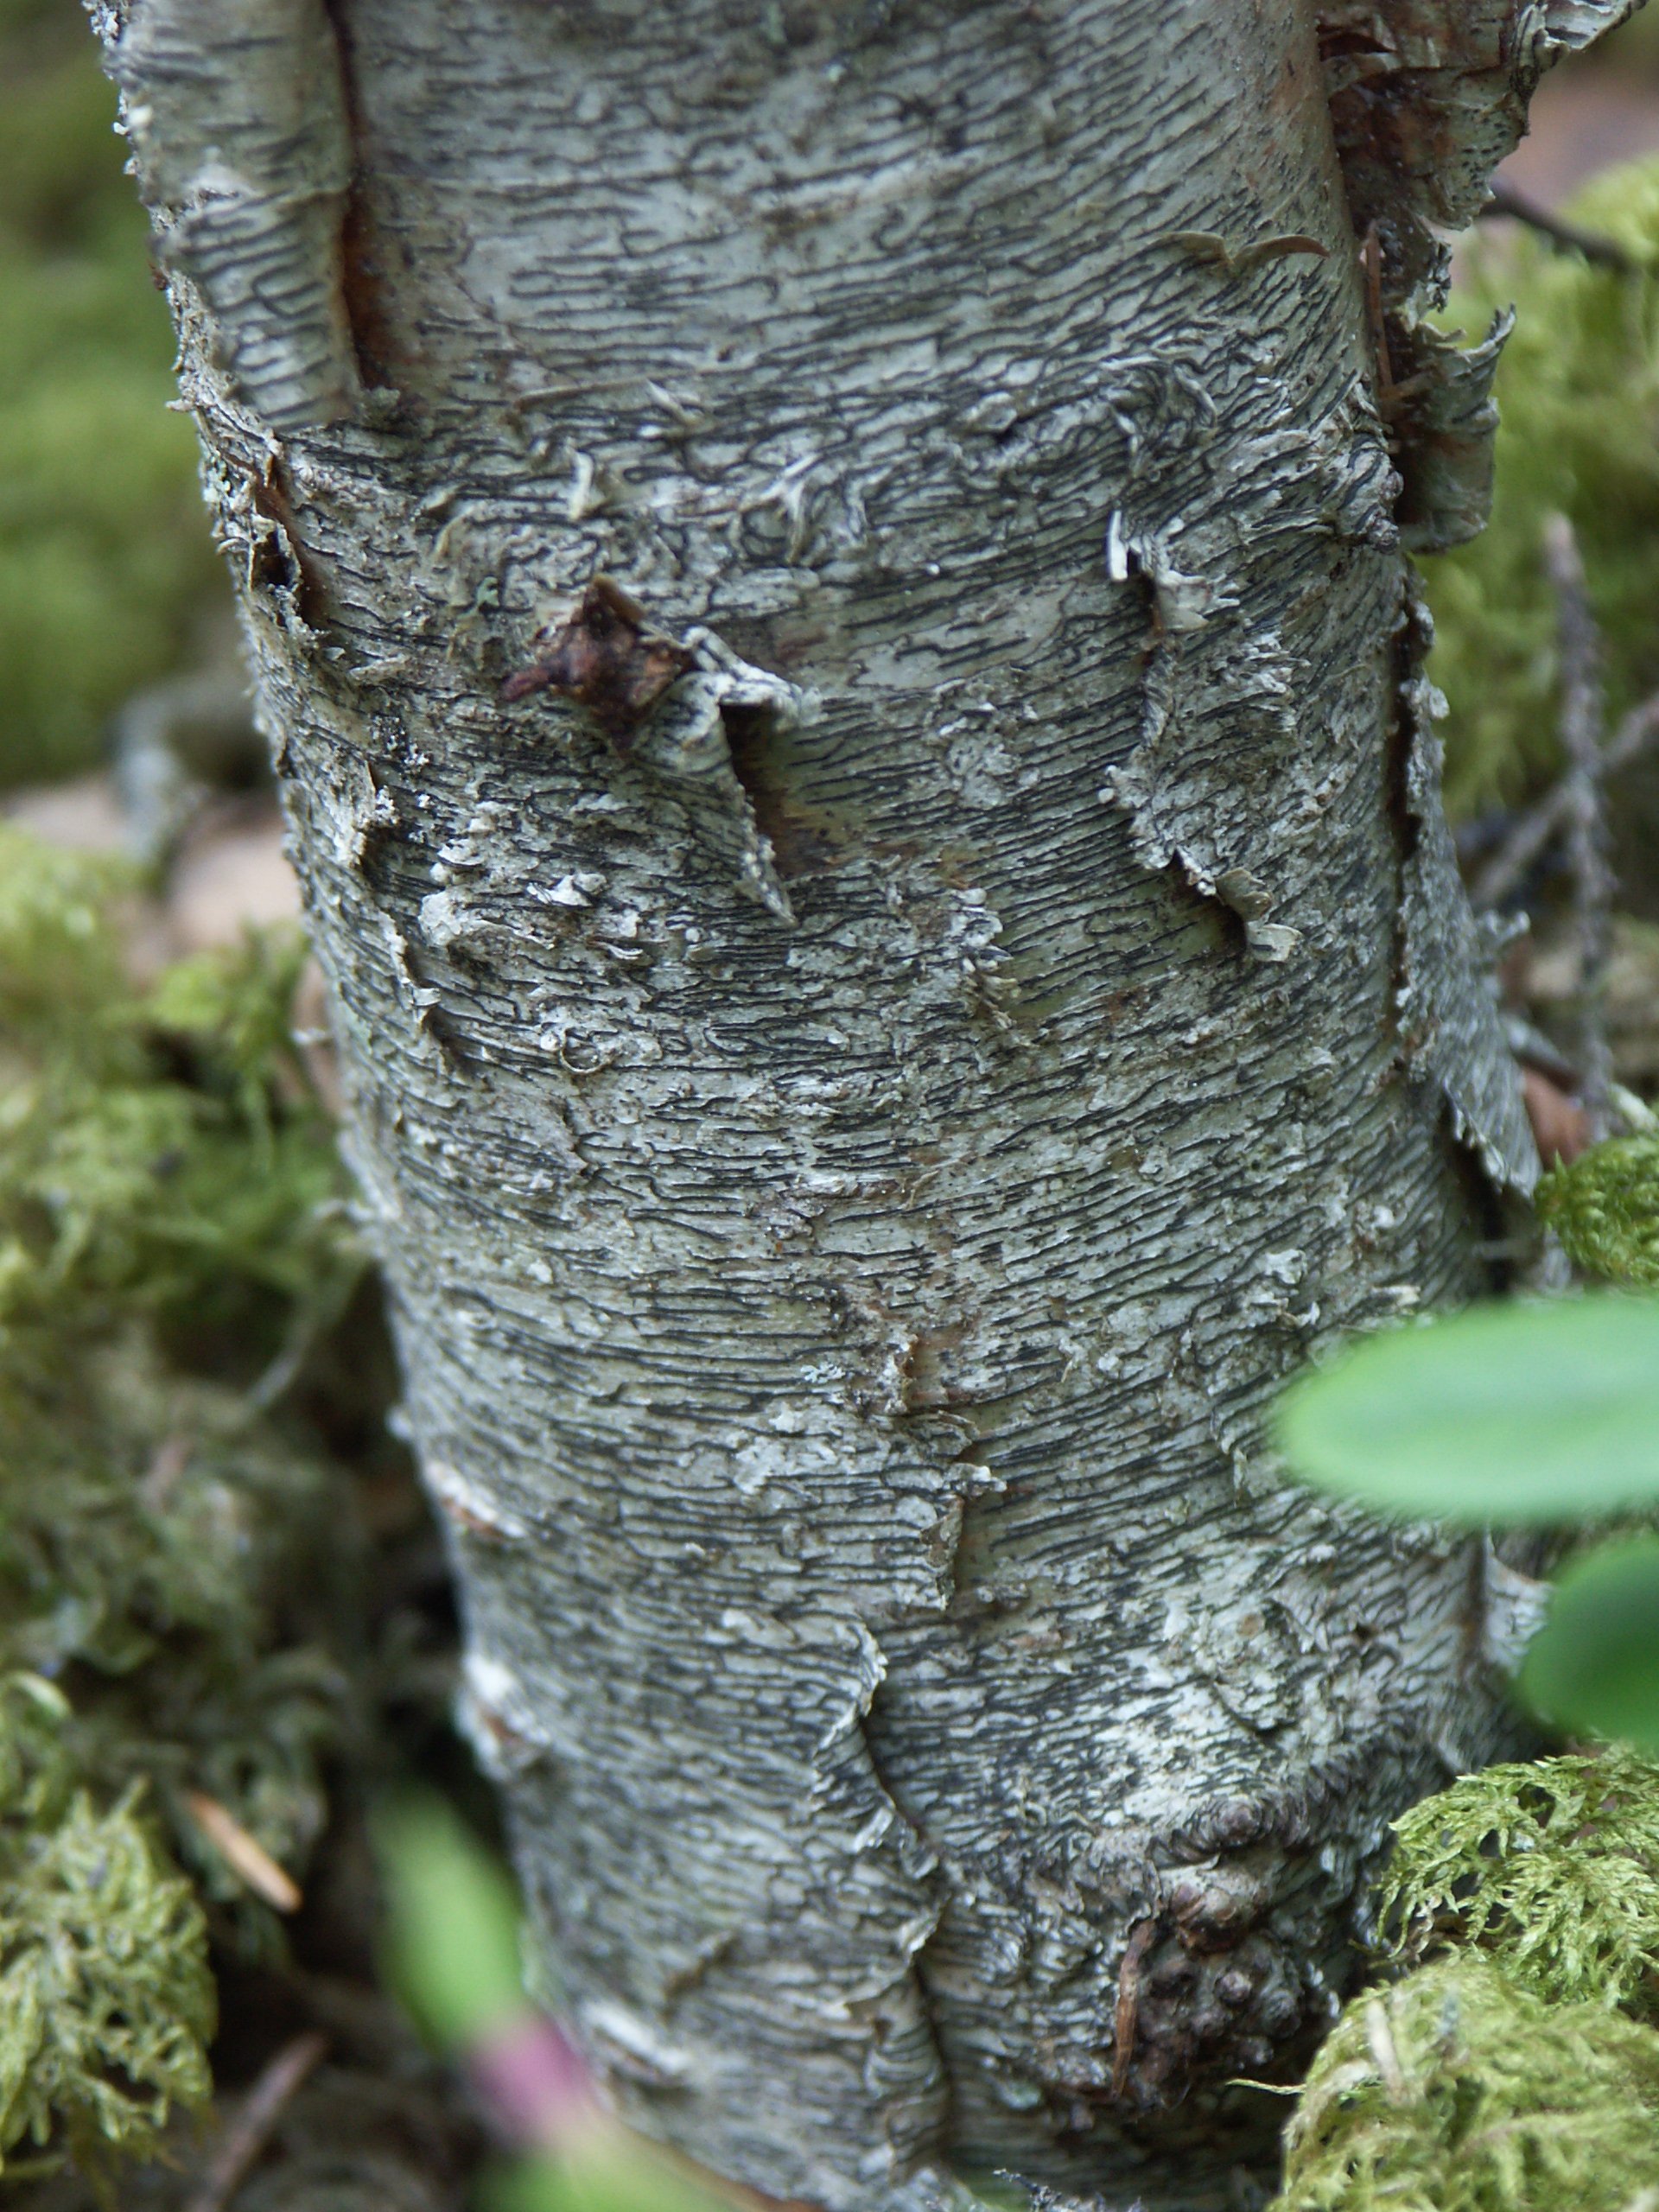 En trädstam med ljusgrå bark som delvis sitter löst. På barken växer laven skriftalv, som ser ut som svarta streck.